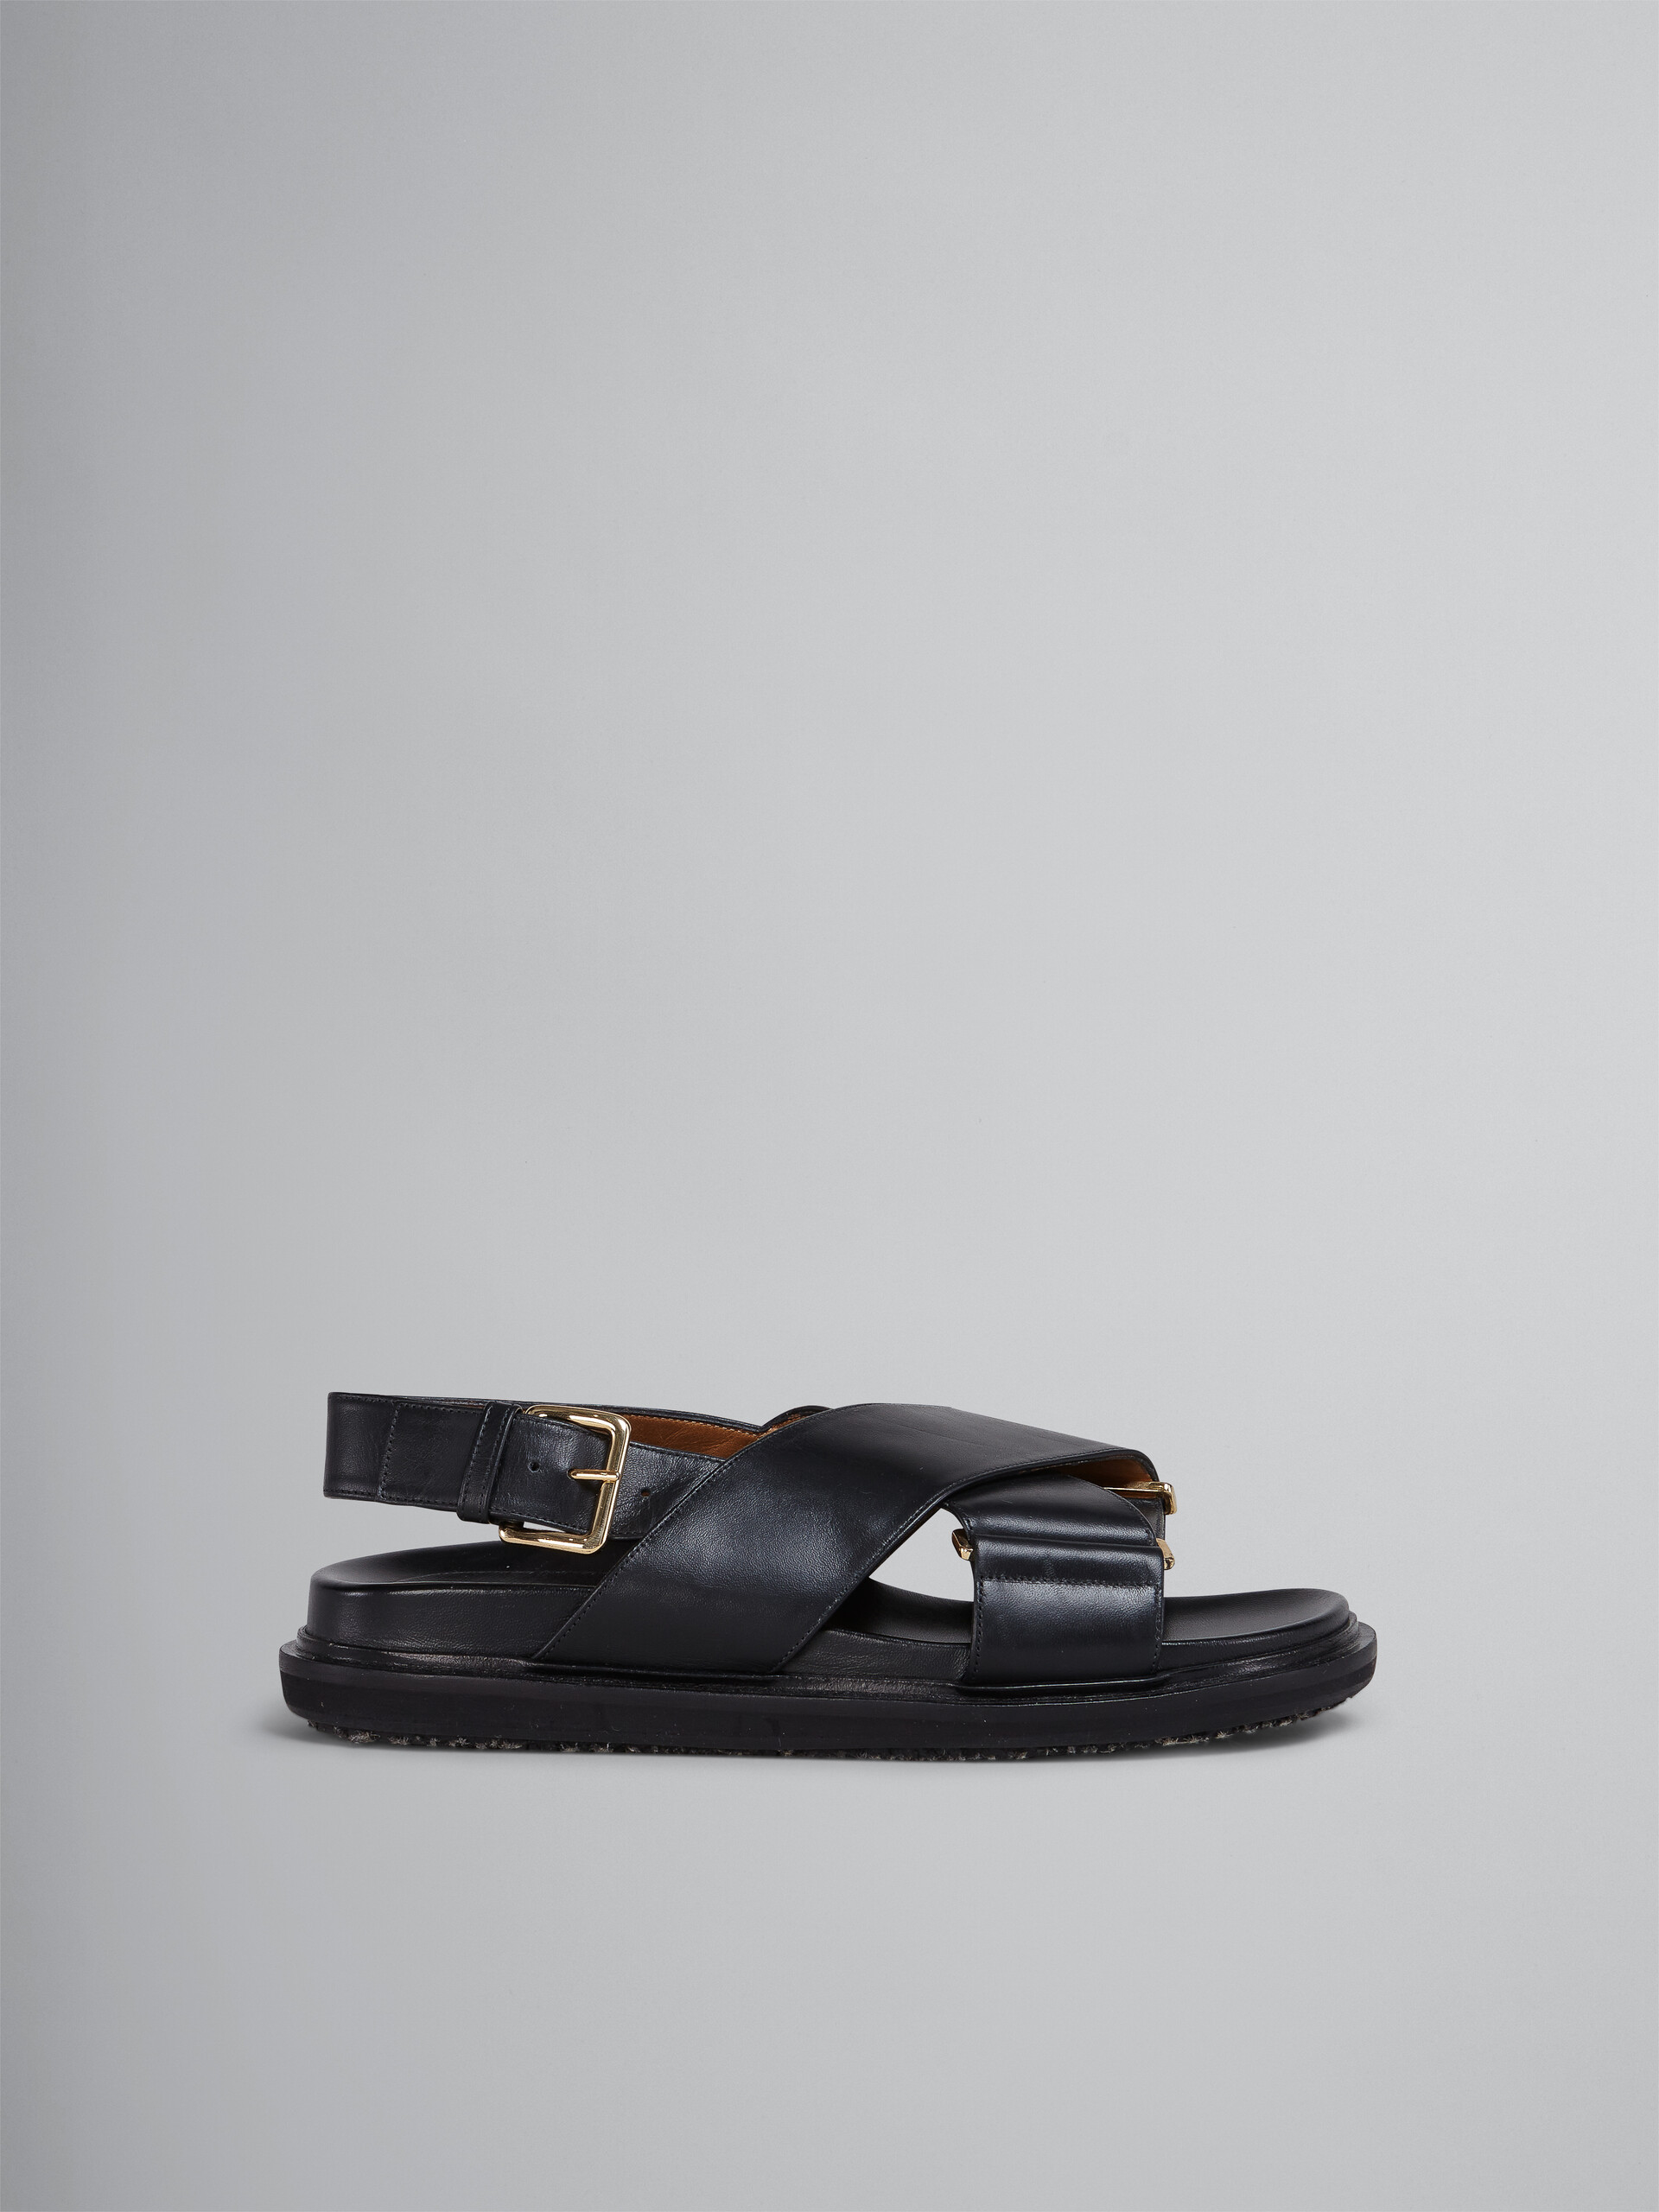 블랙 가죽 퍼스베트 - Sandals - Image 1